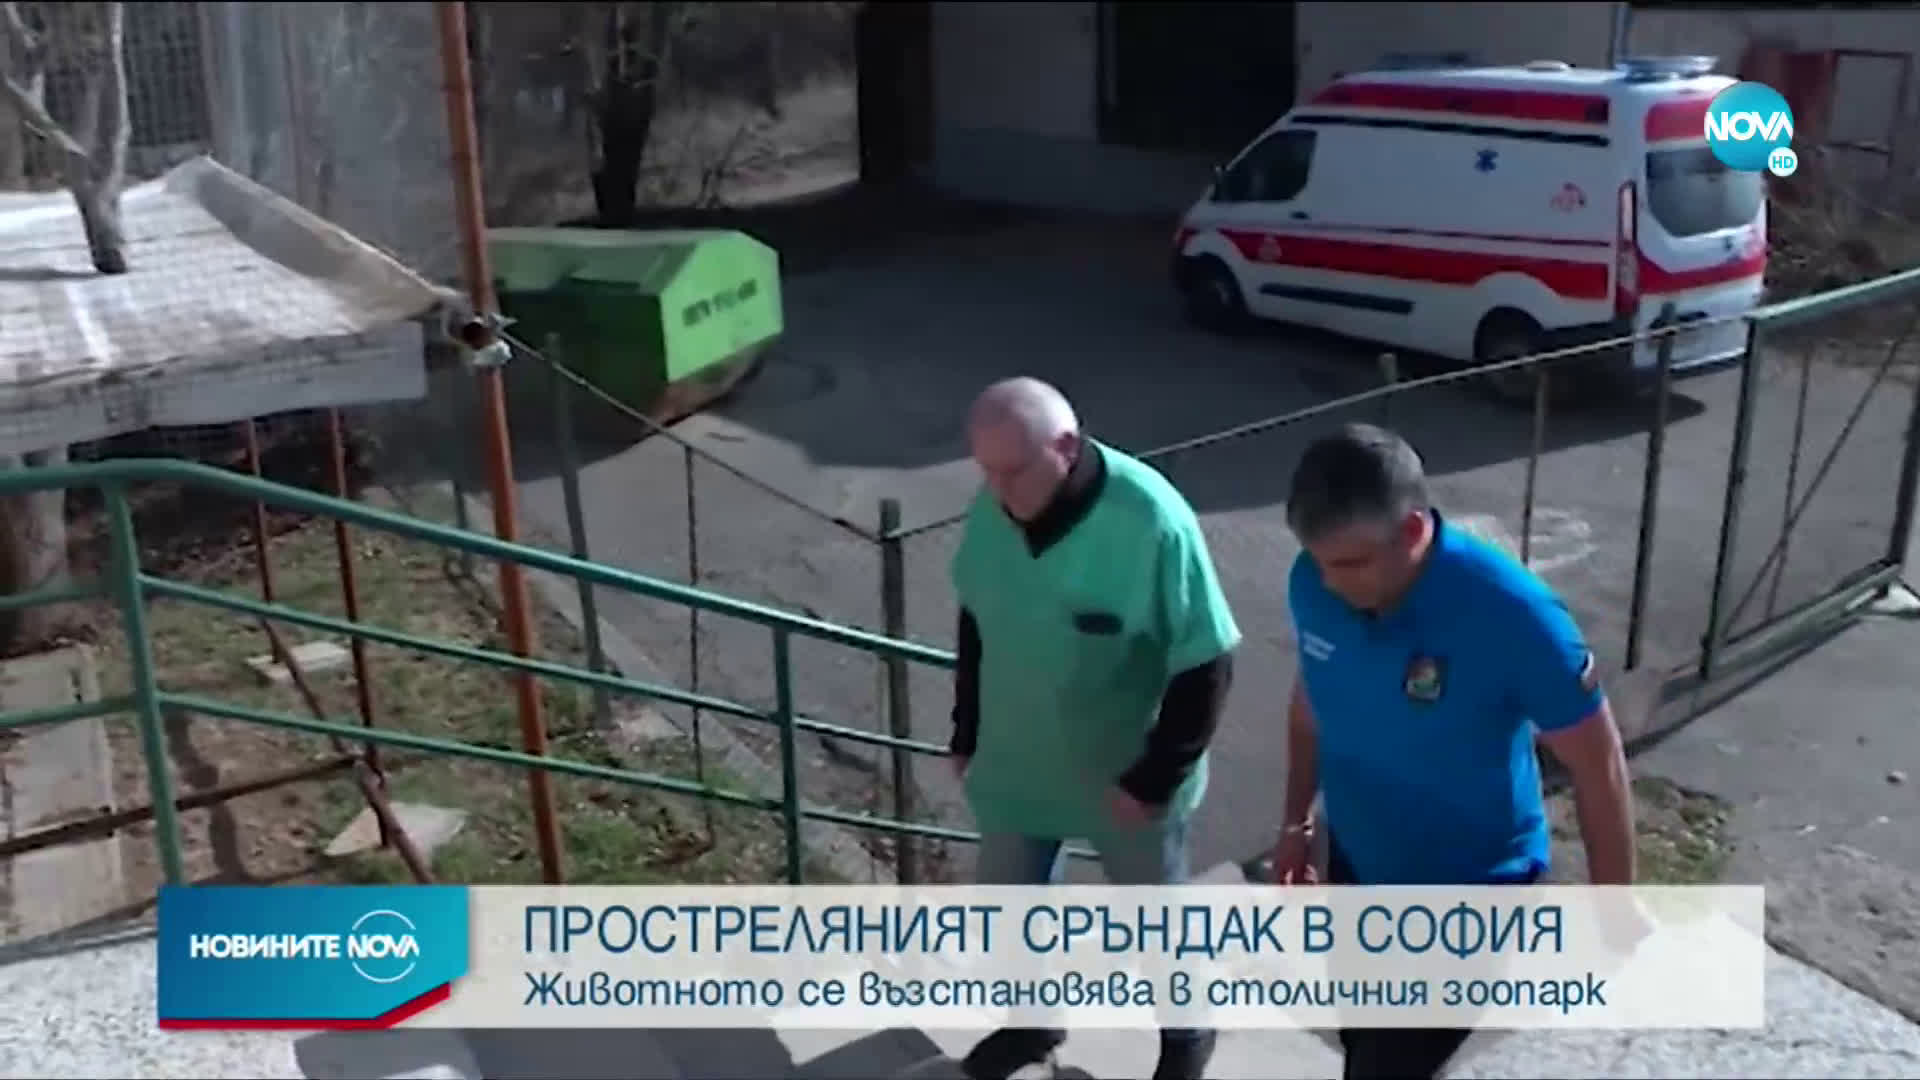 Какво е състоянието на простреляния в София сръндак